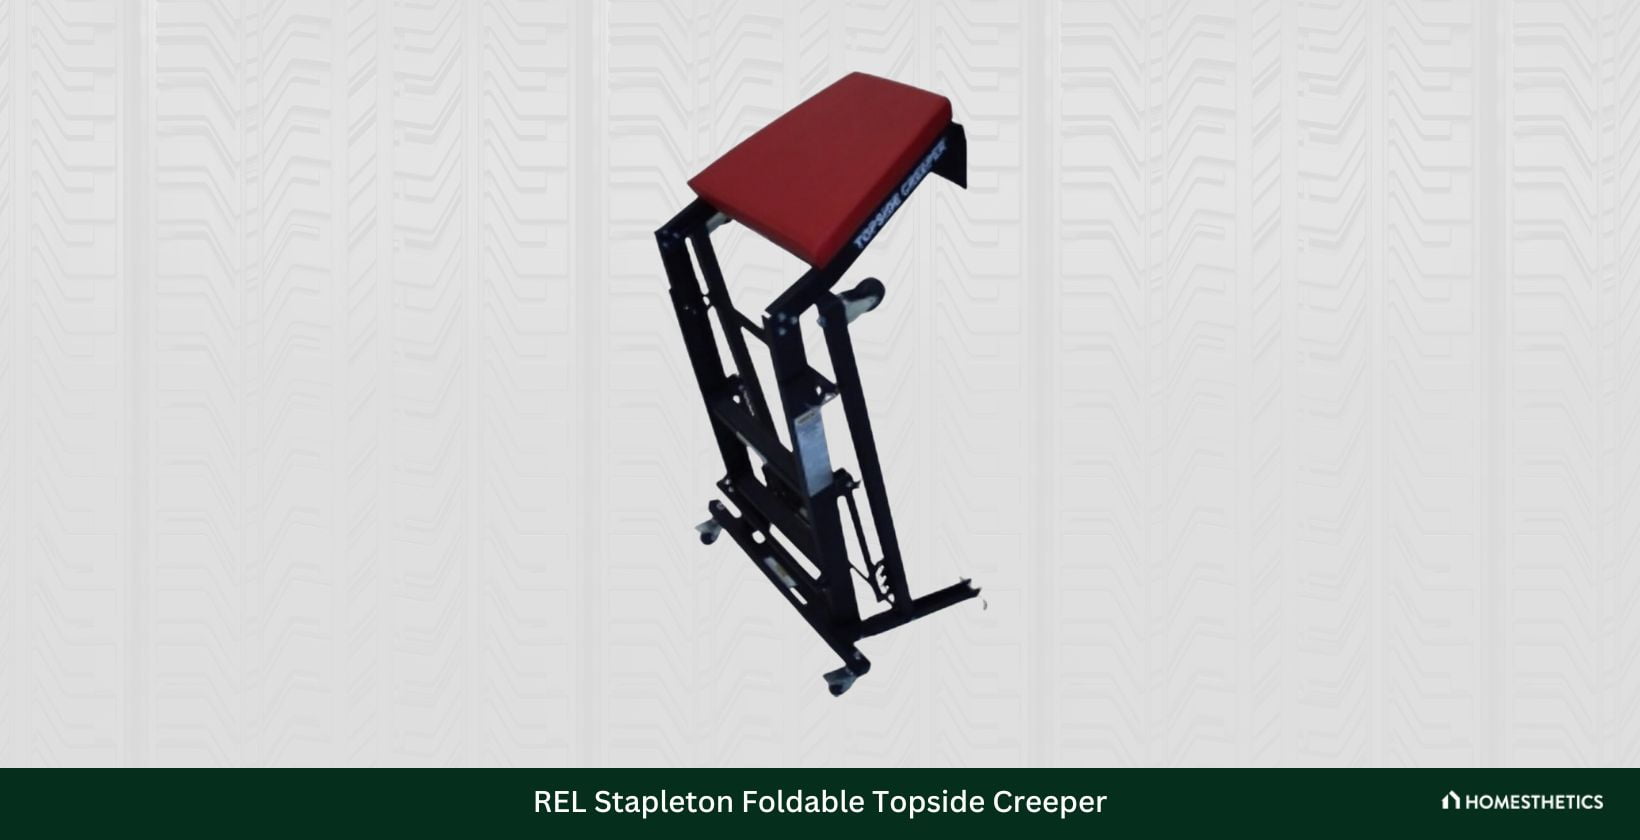 REL Stapleton Foldable Topside Creeper2